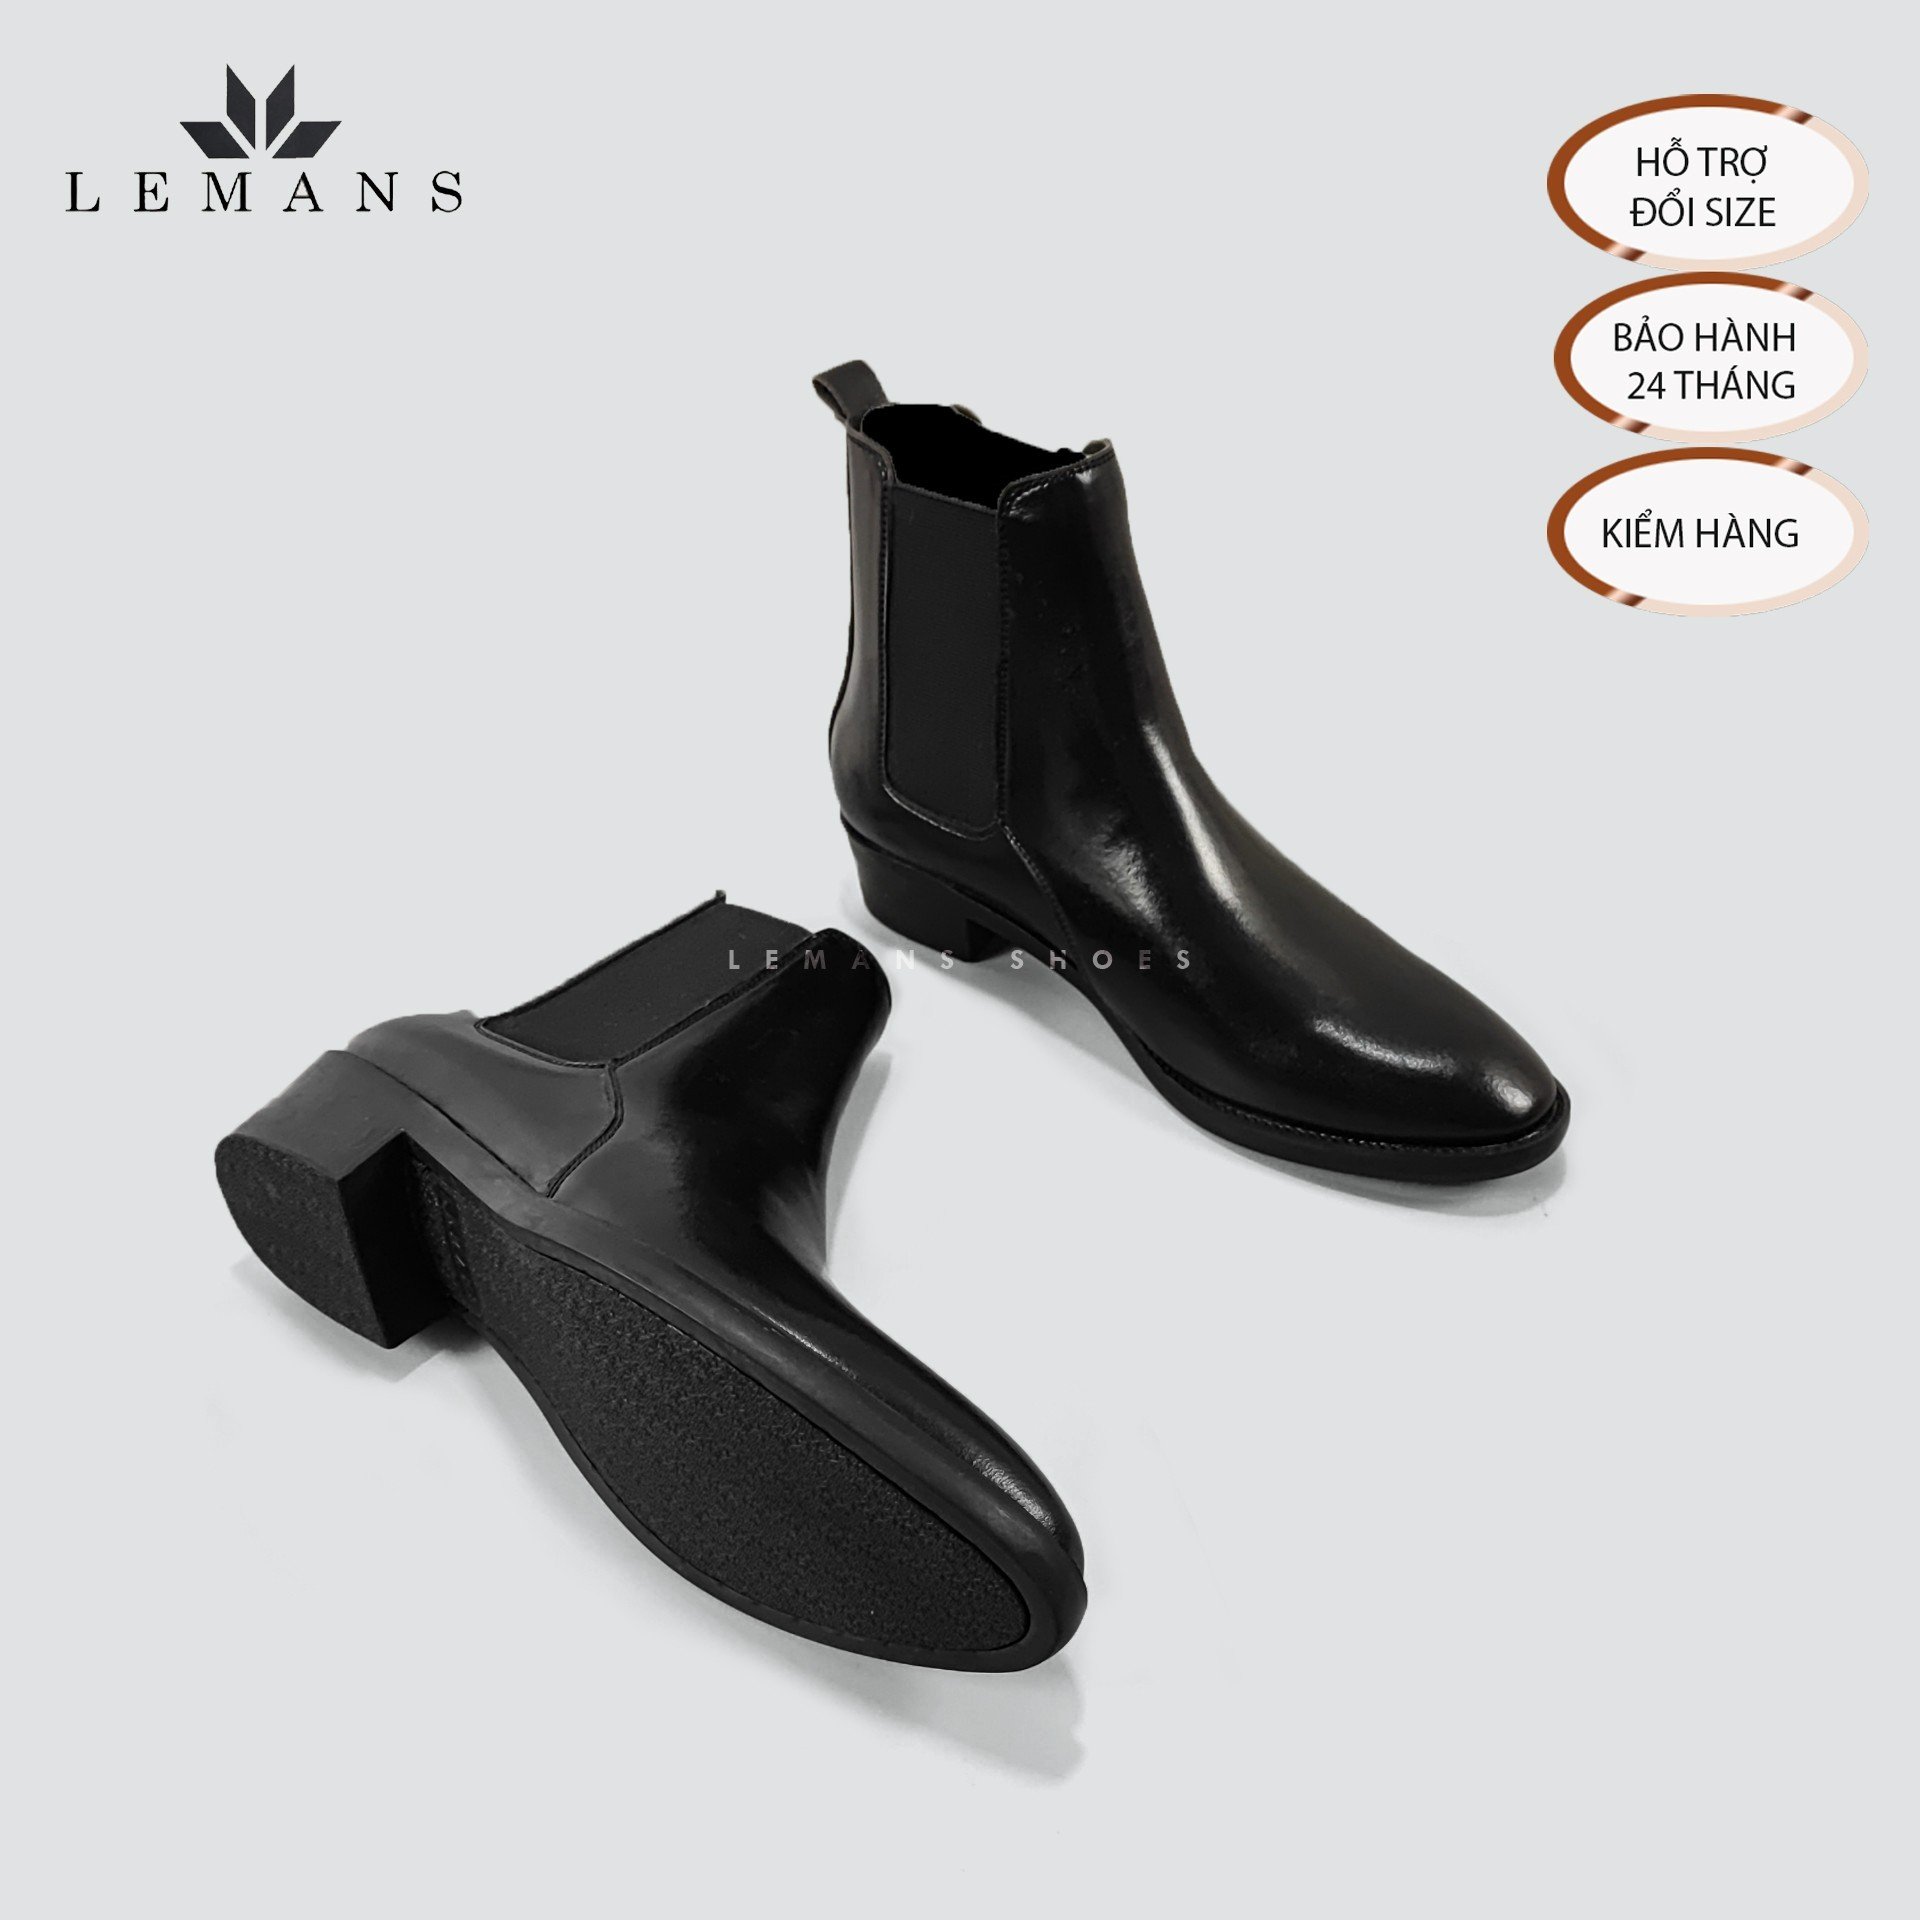 [CHELSEA CLASSIC] Giày Chelsea Boots LeMans CB04 da bò nhập khẩu mũi nhọn, tăng cao 5cm, bảo hành 24 tháng, boot nam